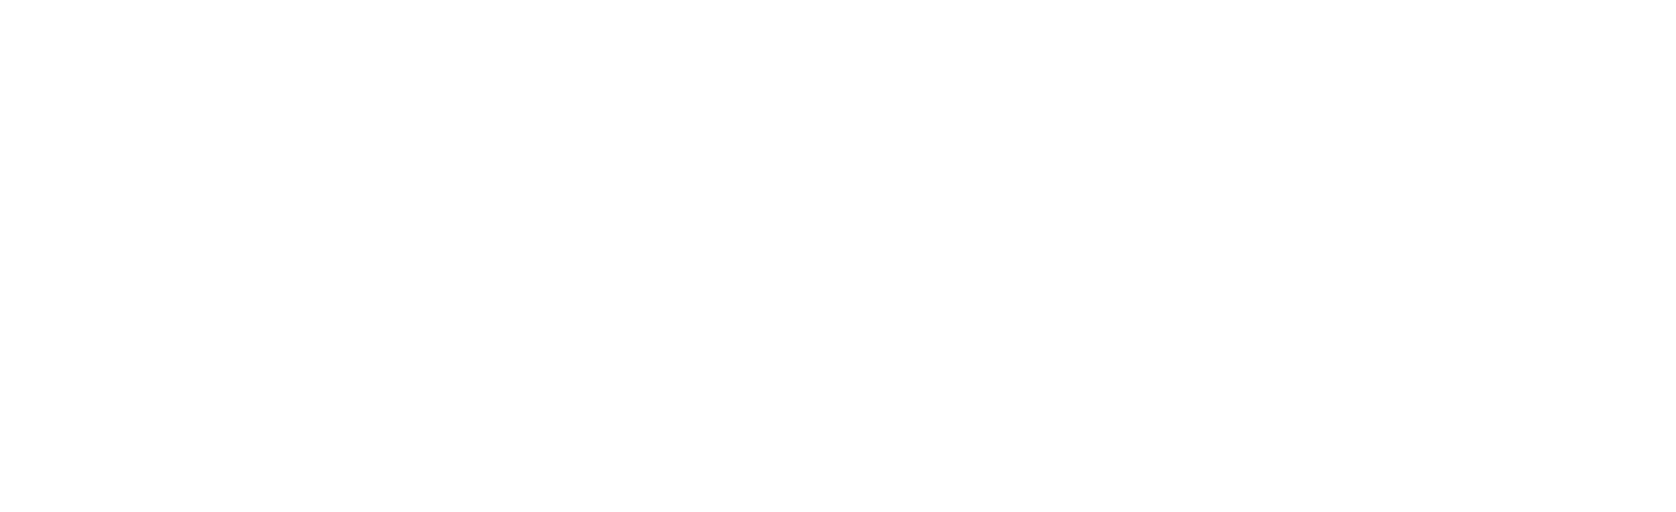 XLOW Logo